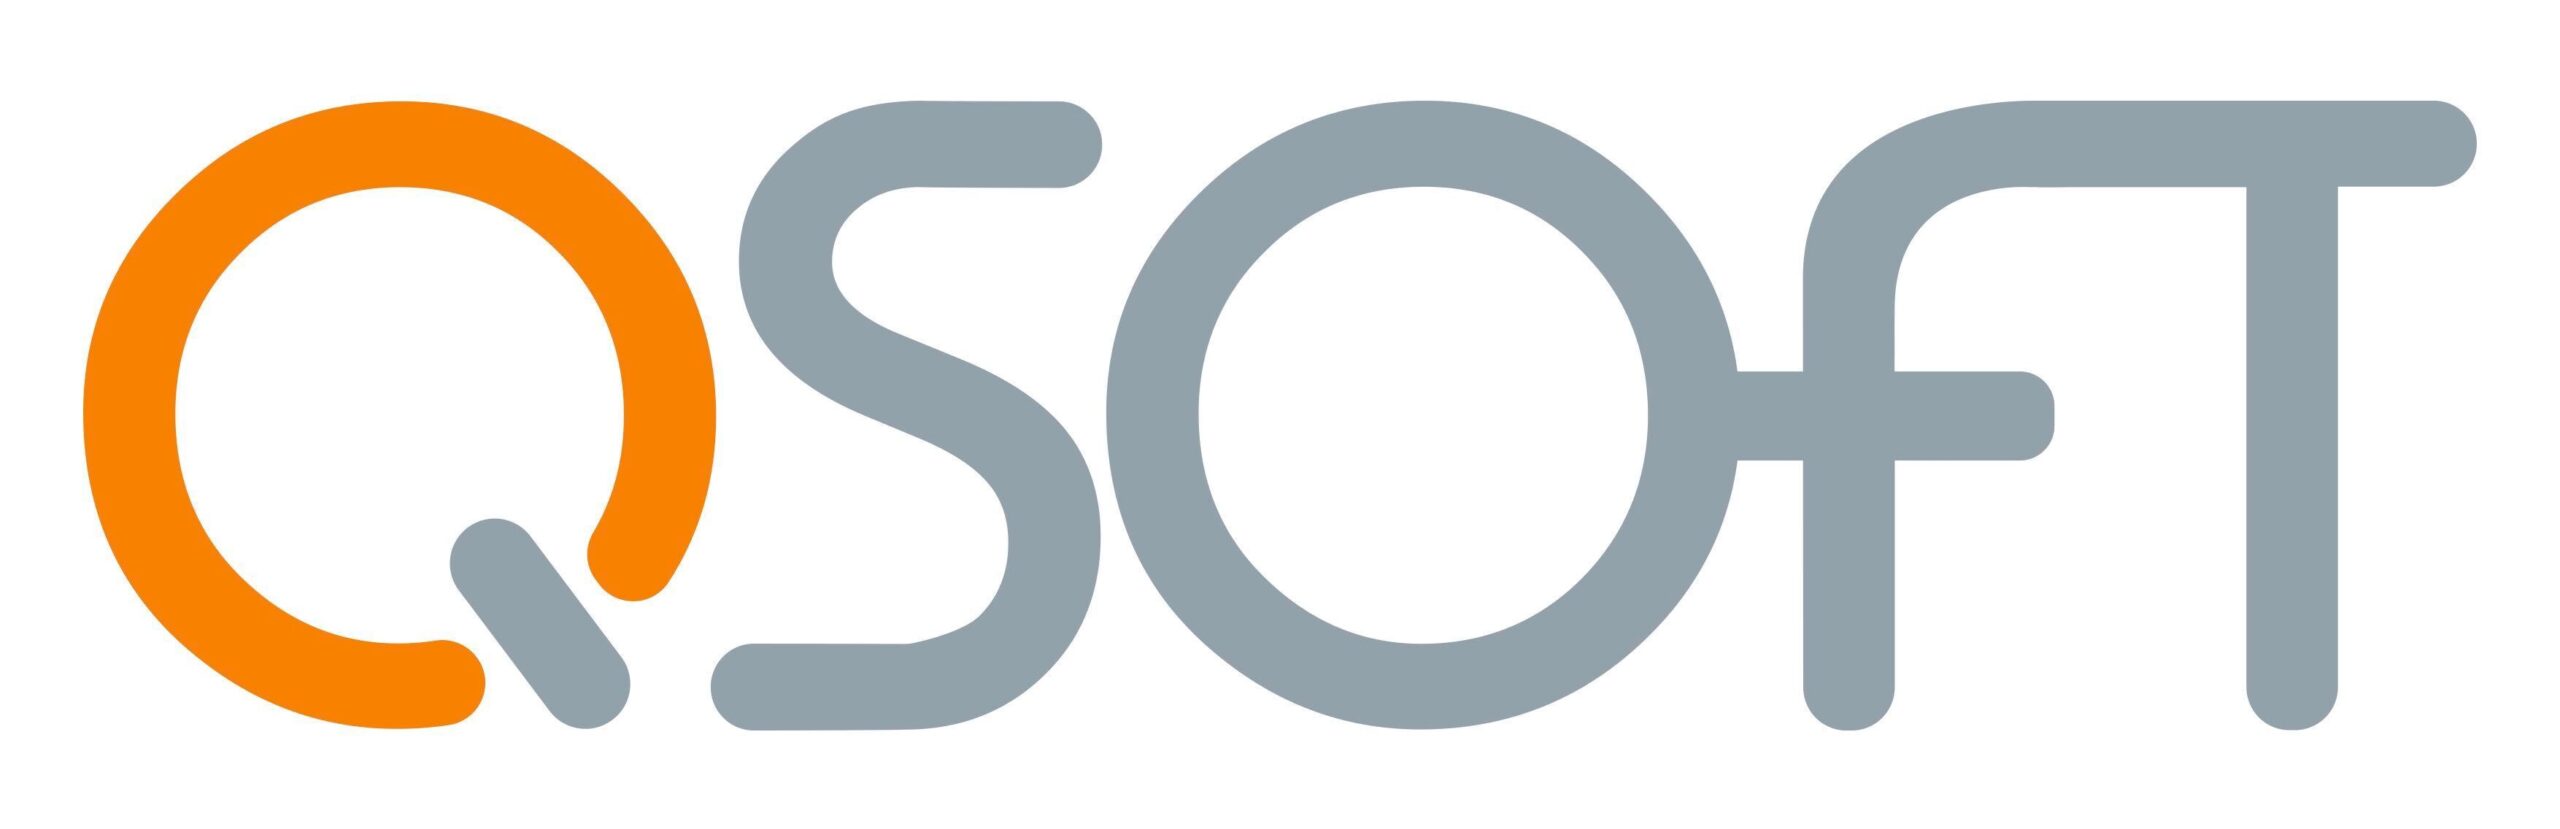 qsoft-logo-scaled